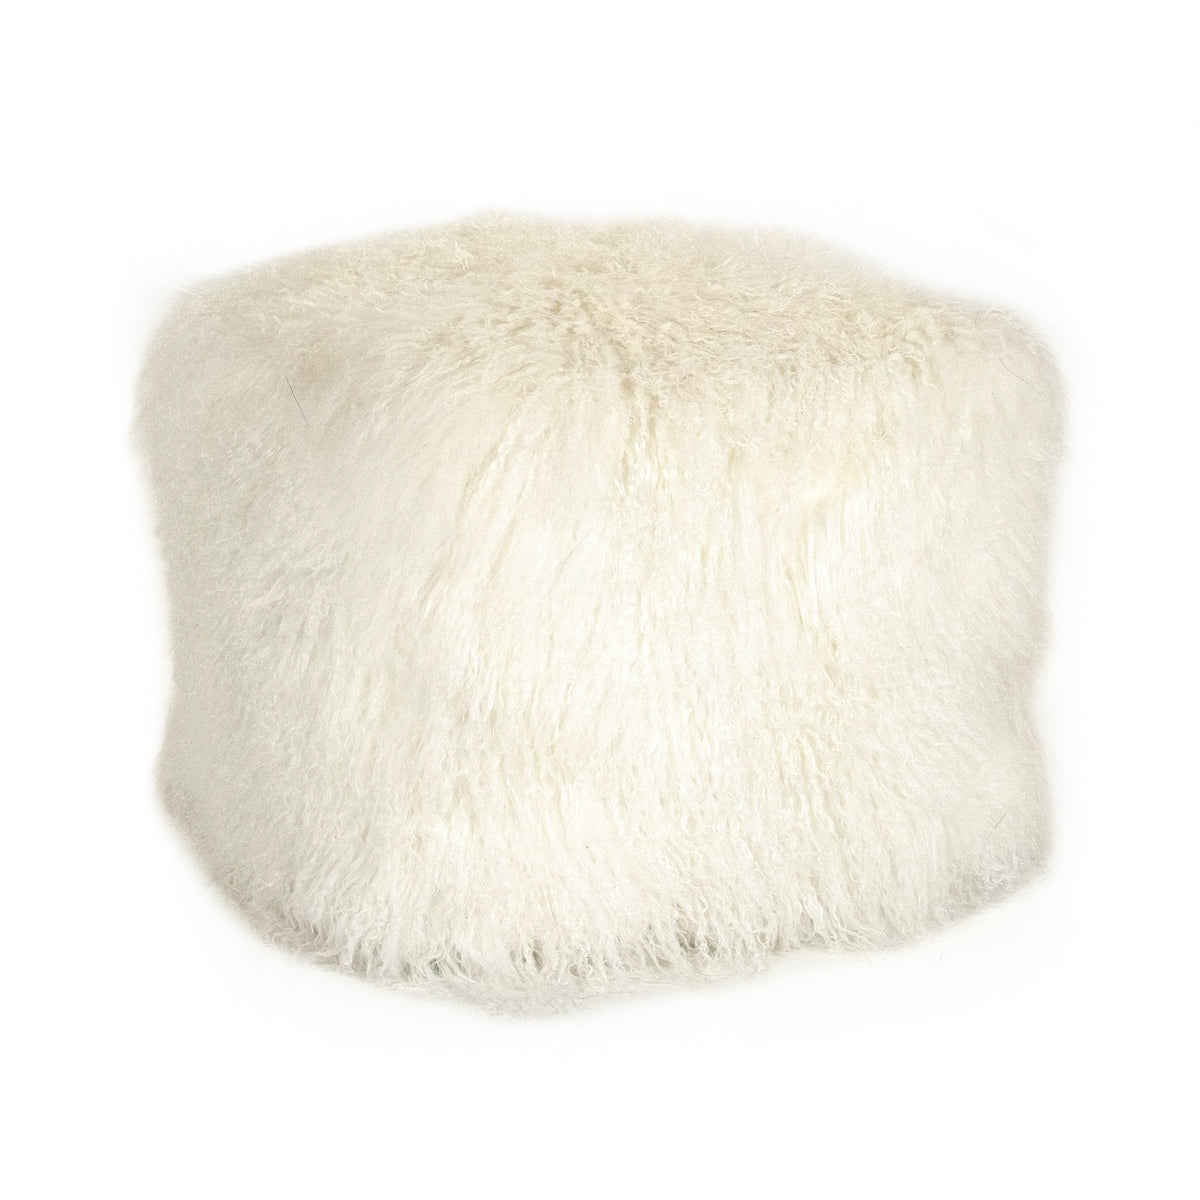 Tibetan White Lamb Fur Pillow by Zentique